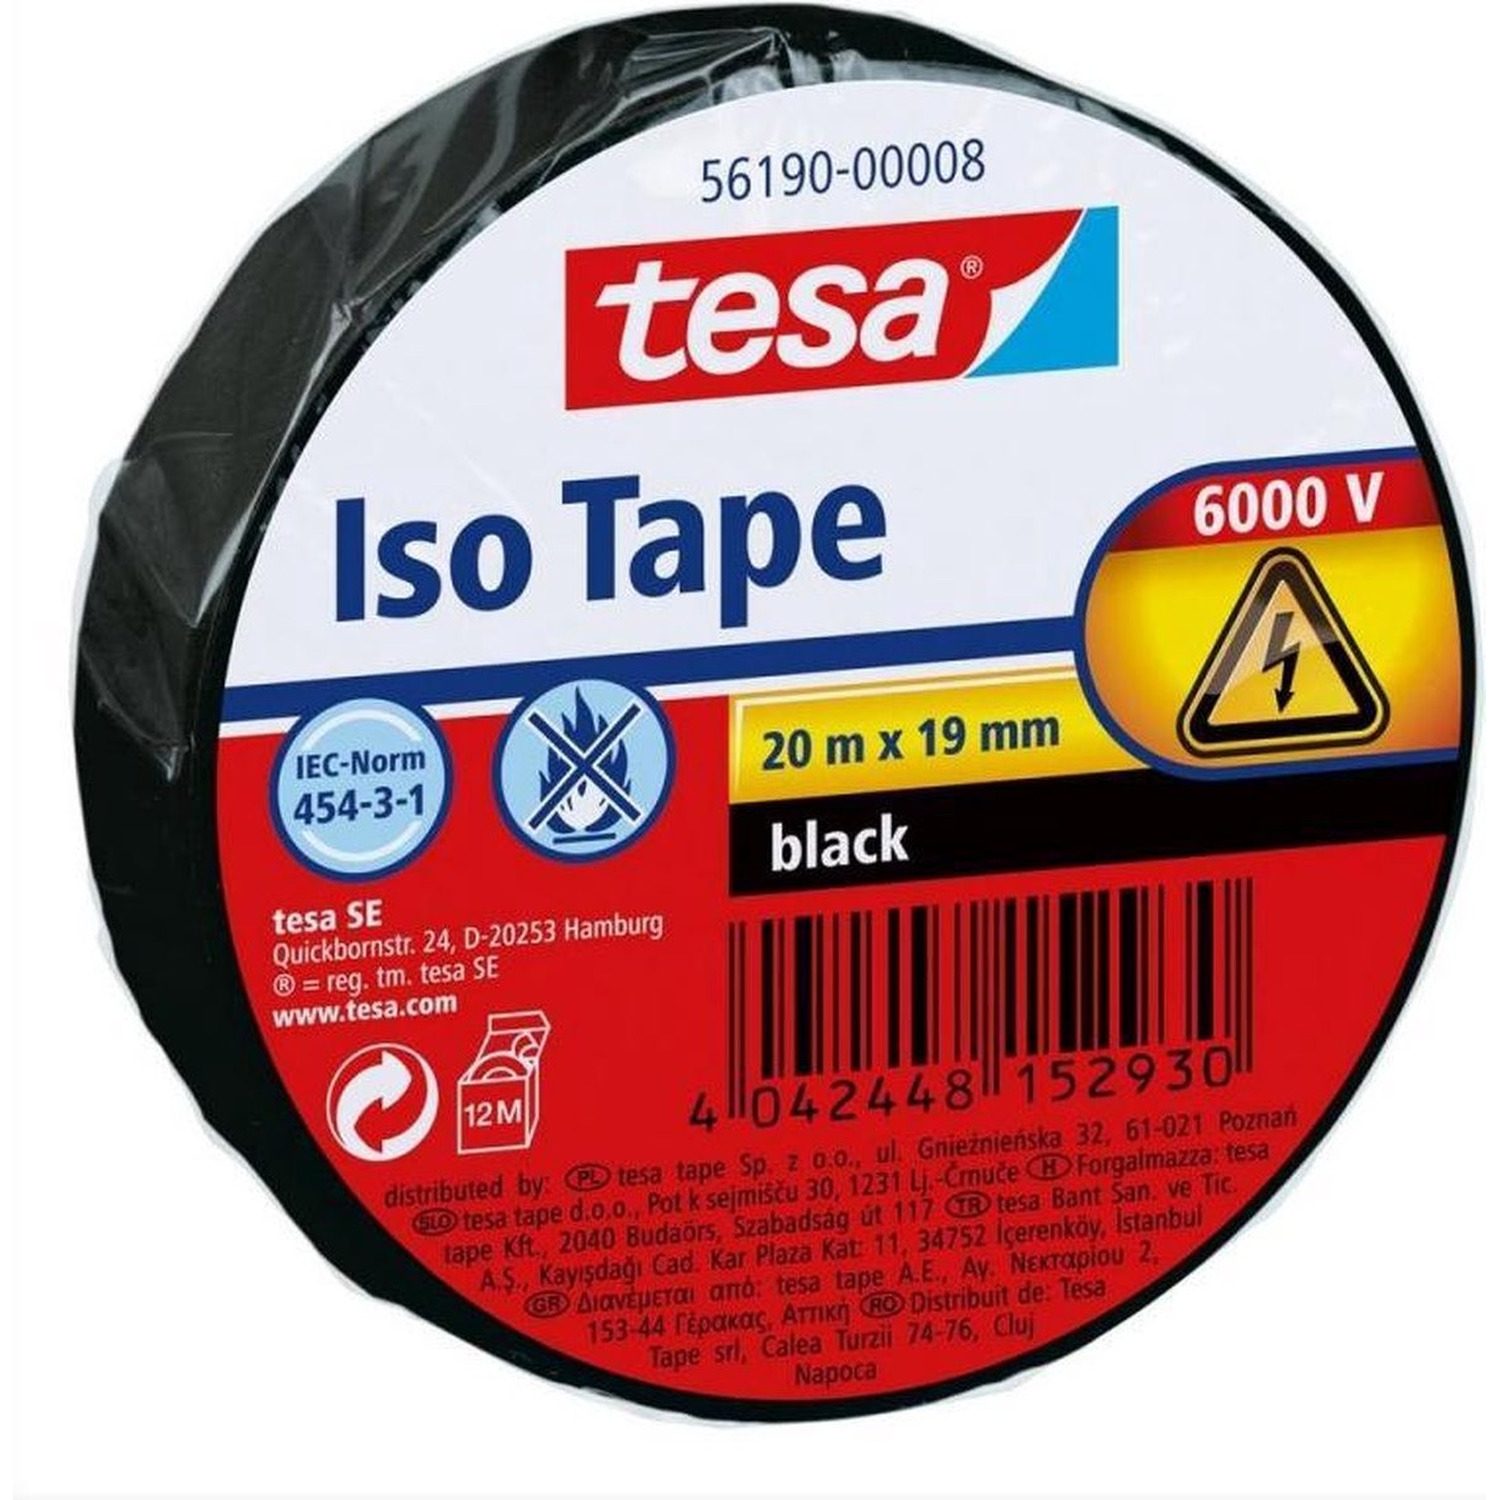 1x Tesa isolatietape voor kabels en draden 20 mtr x 1,9 cm